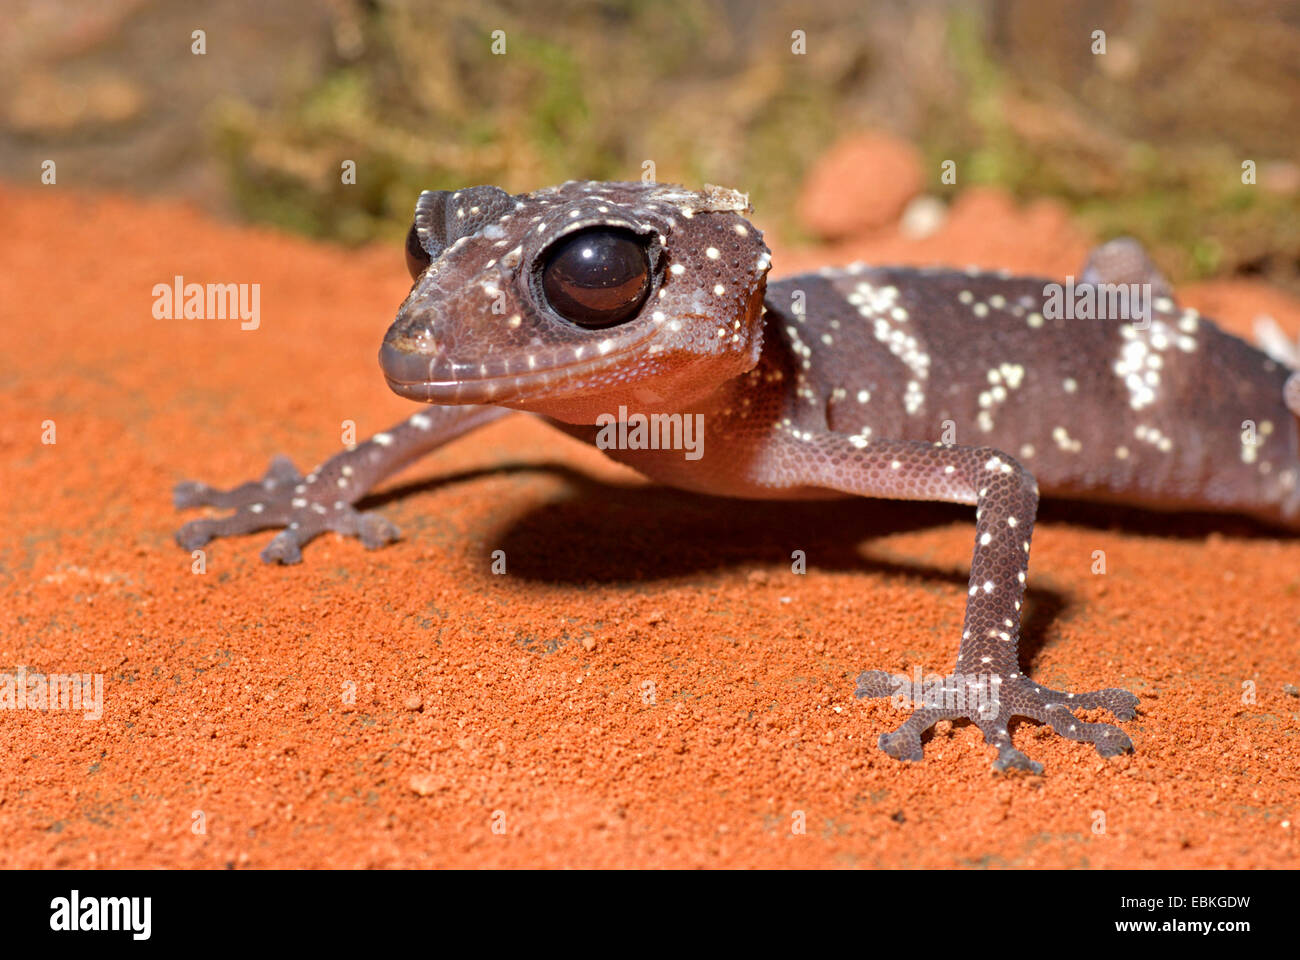 Madagascar Big Eyed Gecko (Paroedura masobe), on red sand Stock Photo